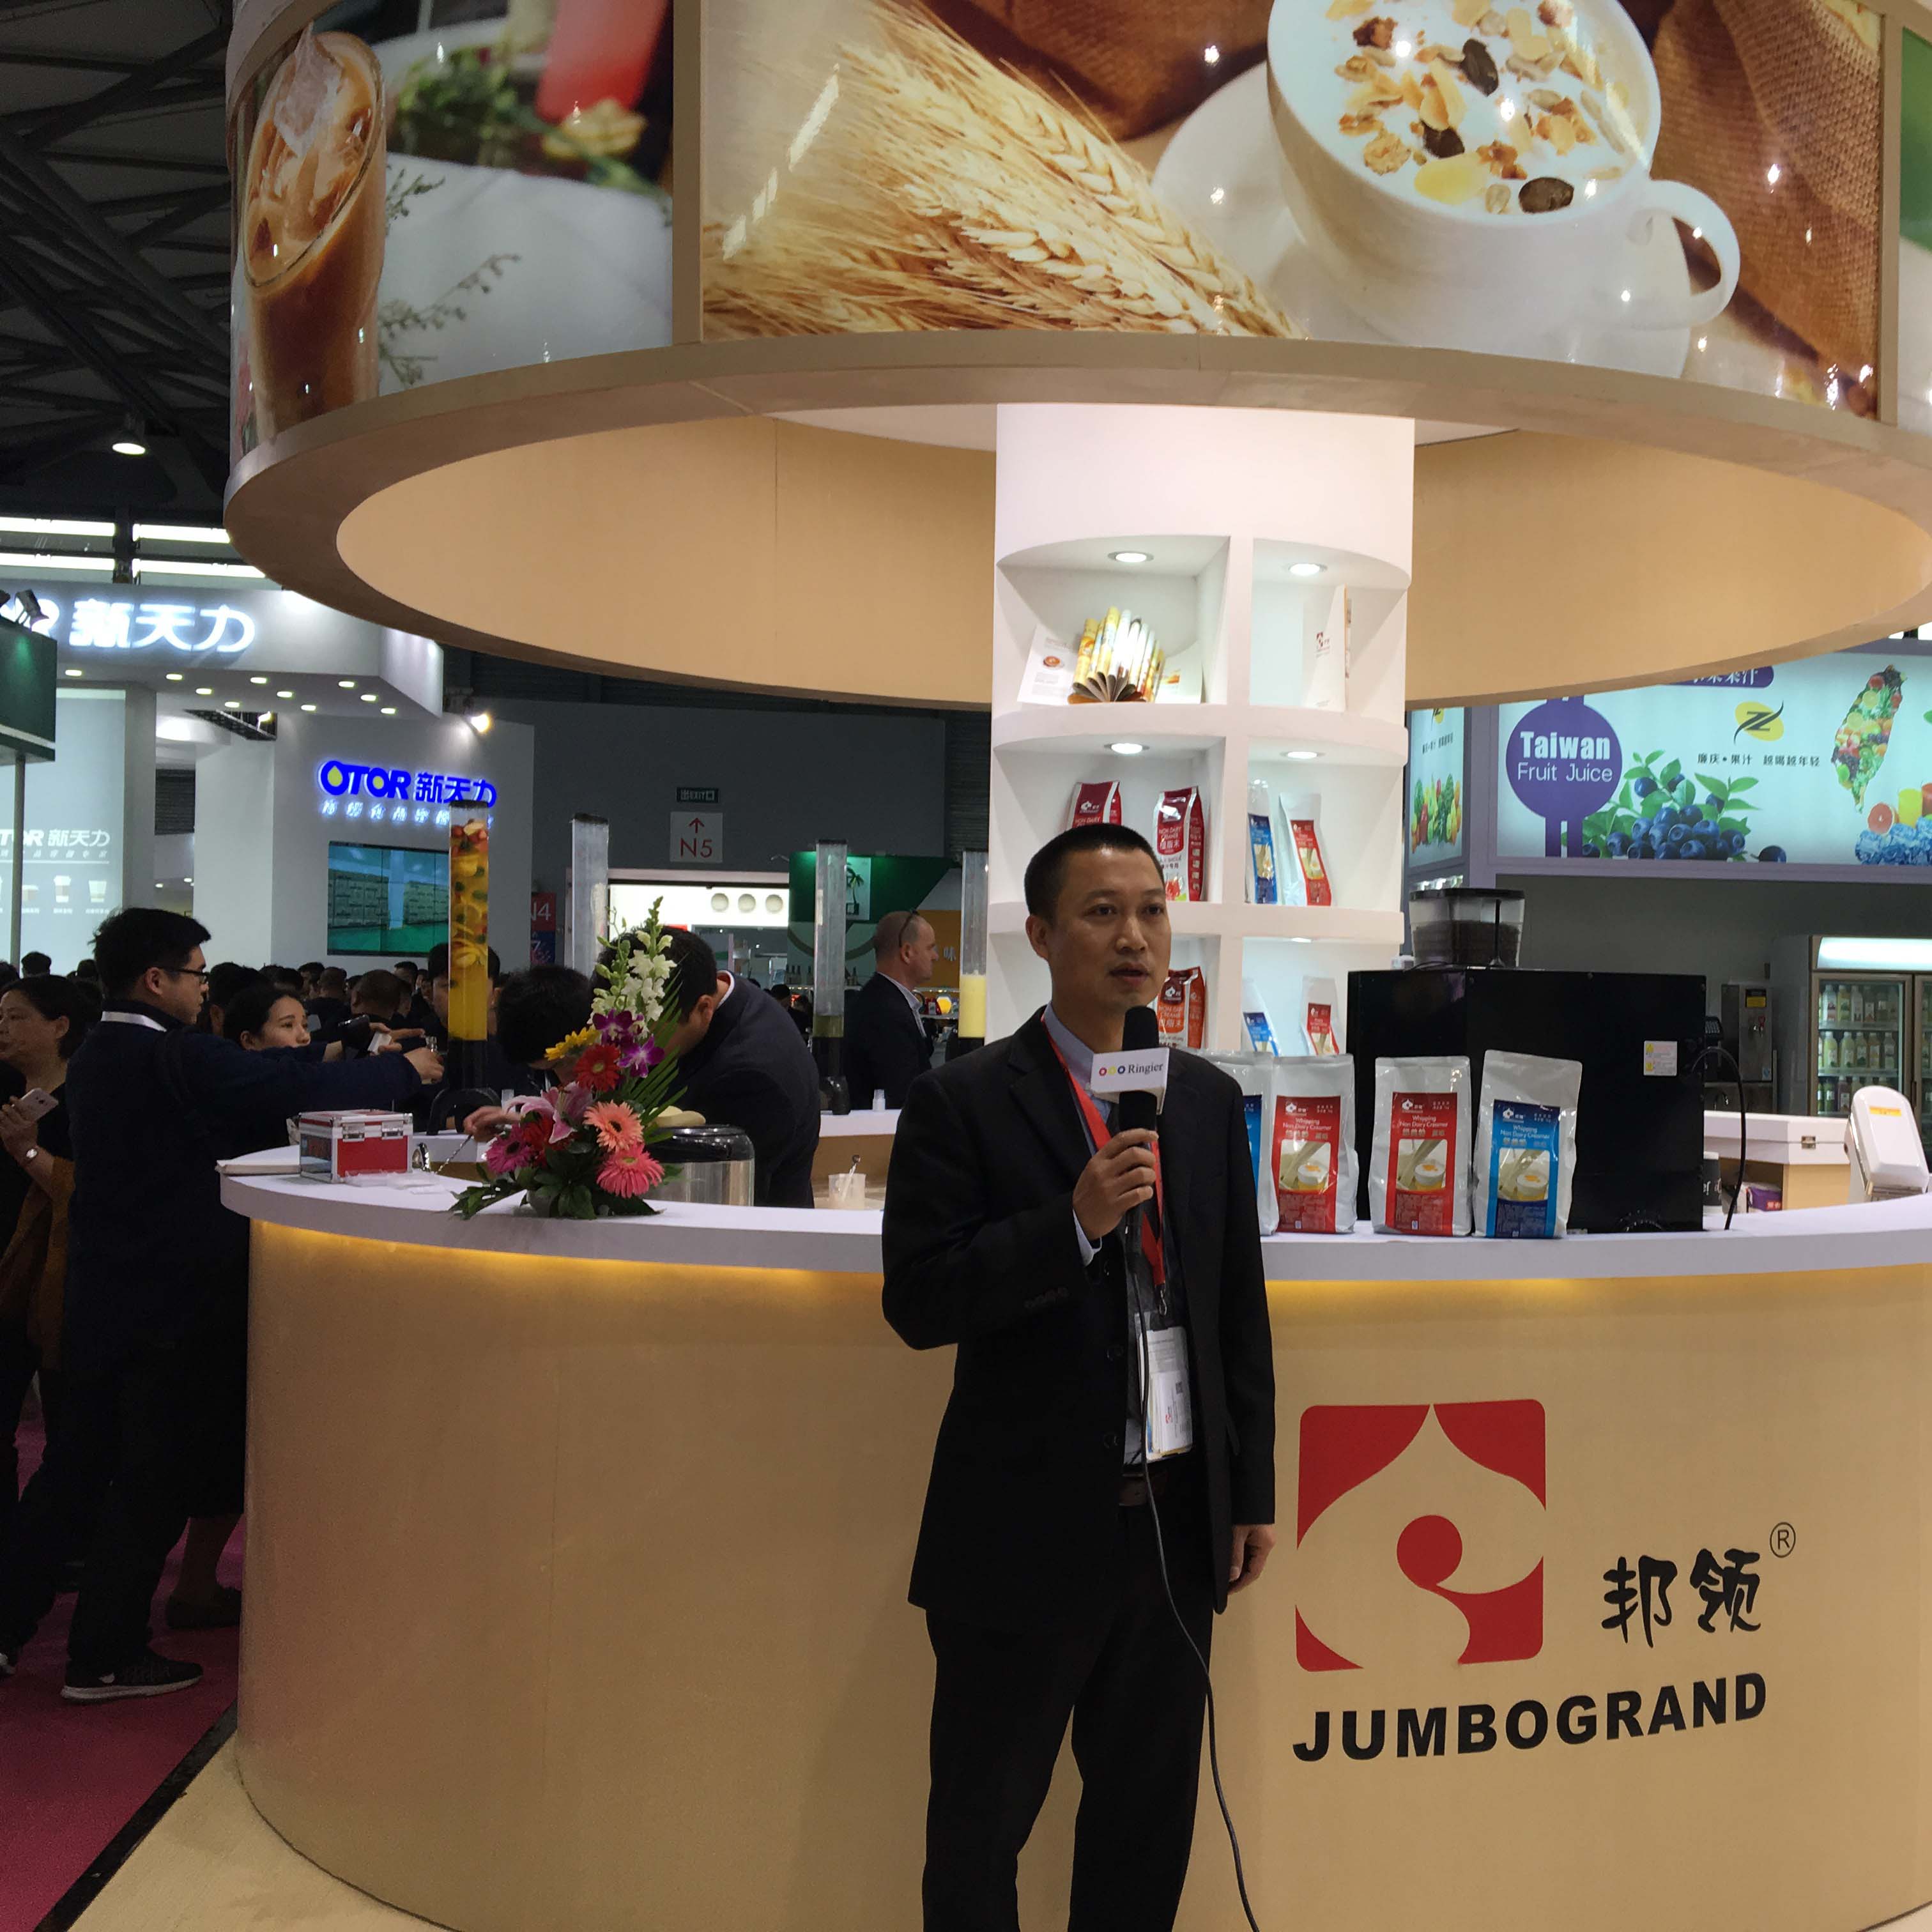 الغذاء الجامبو الكبير في 2017 hotelx غرامة الغذاء المعرض في شنغهاي